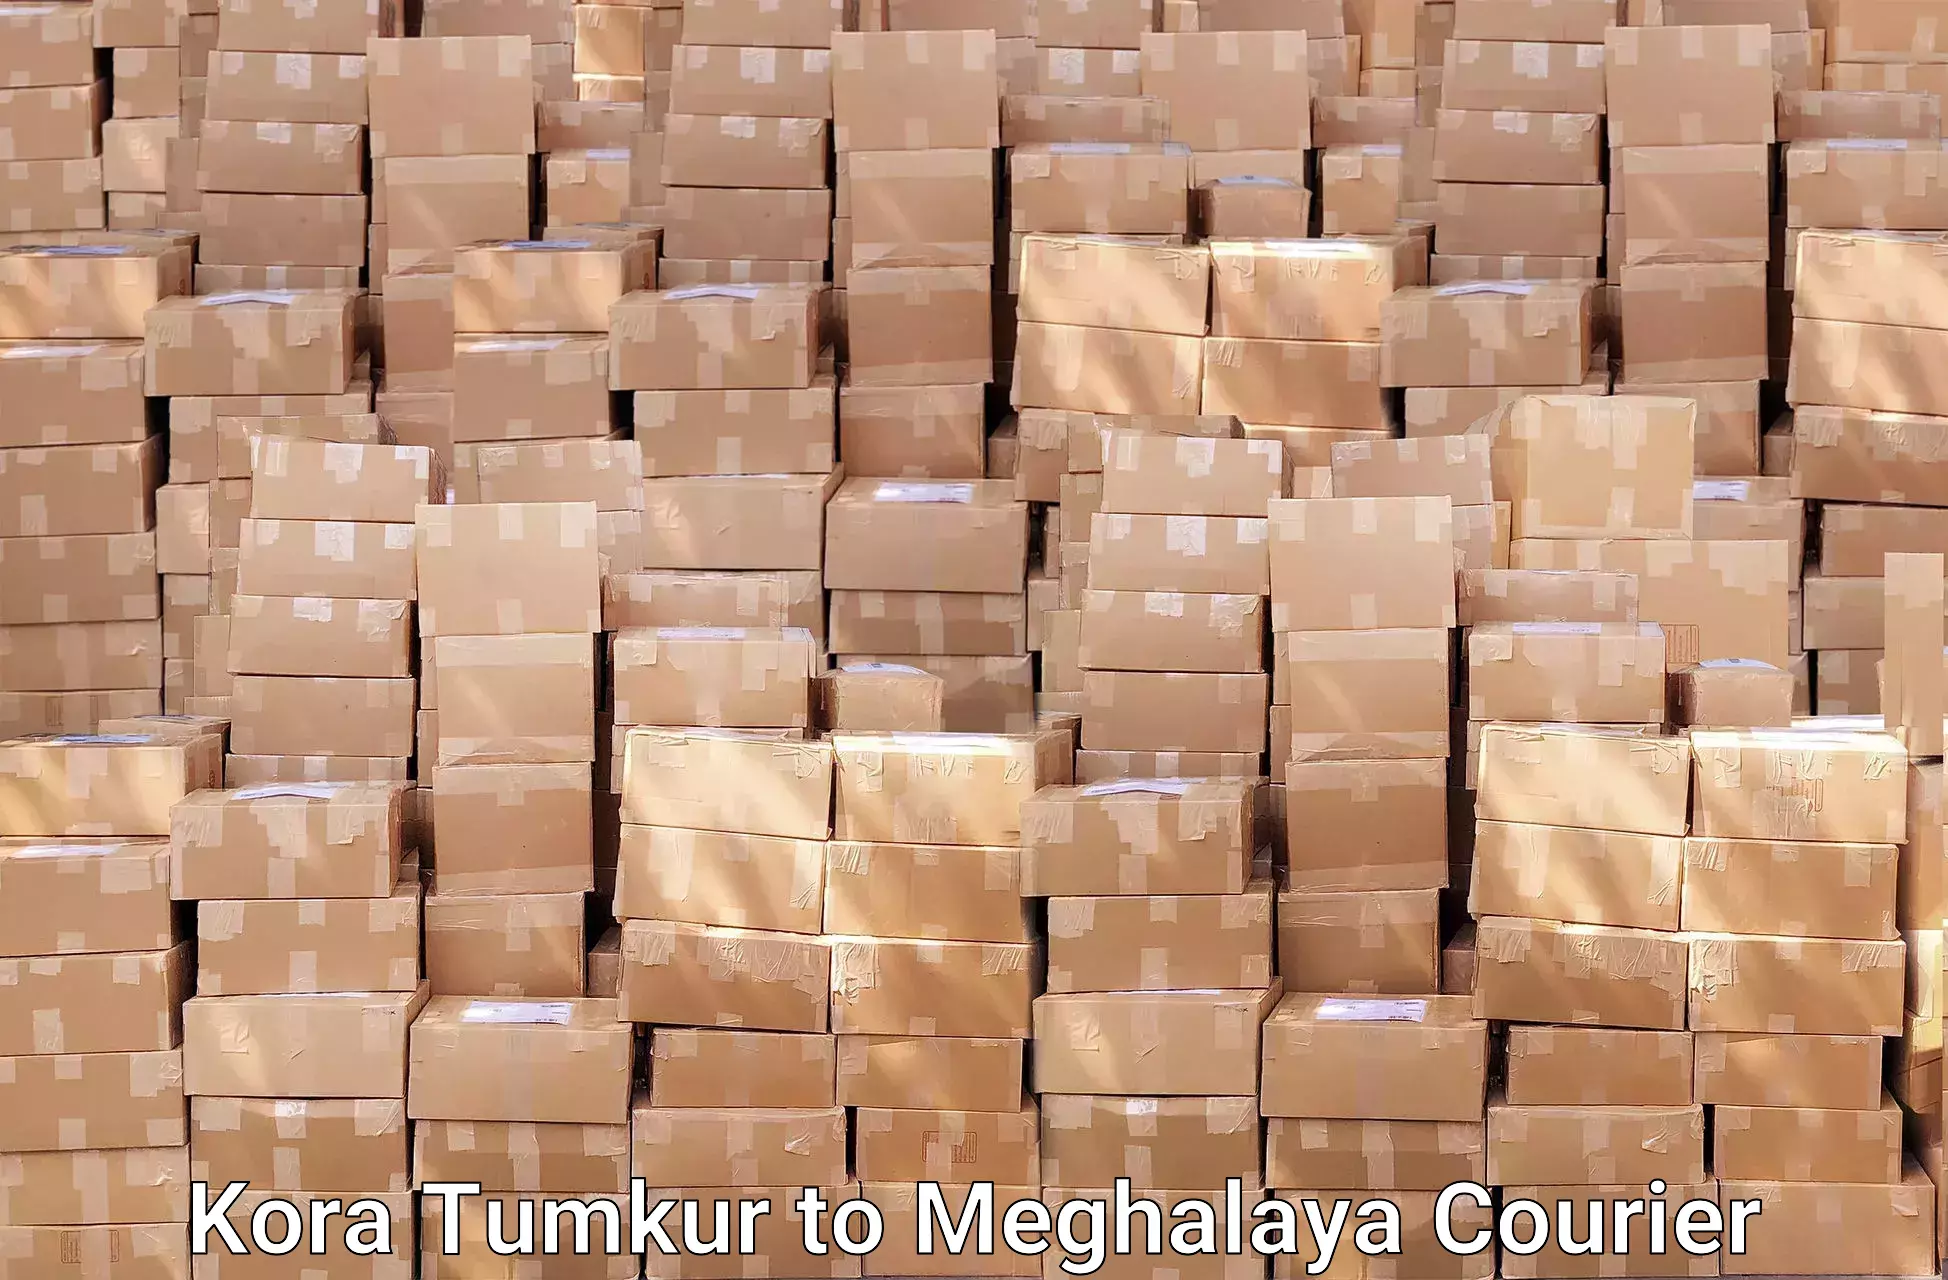 Furniture transport professionals Kora Tumkur to Meghalaya